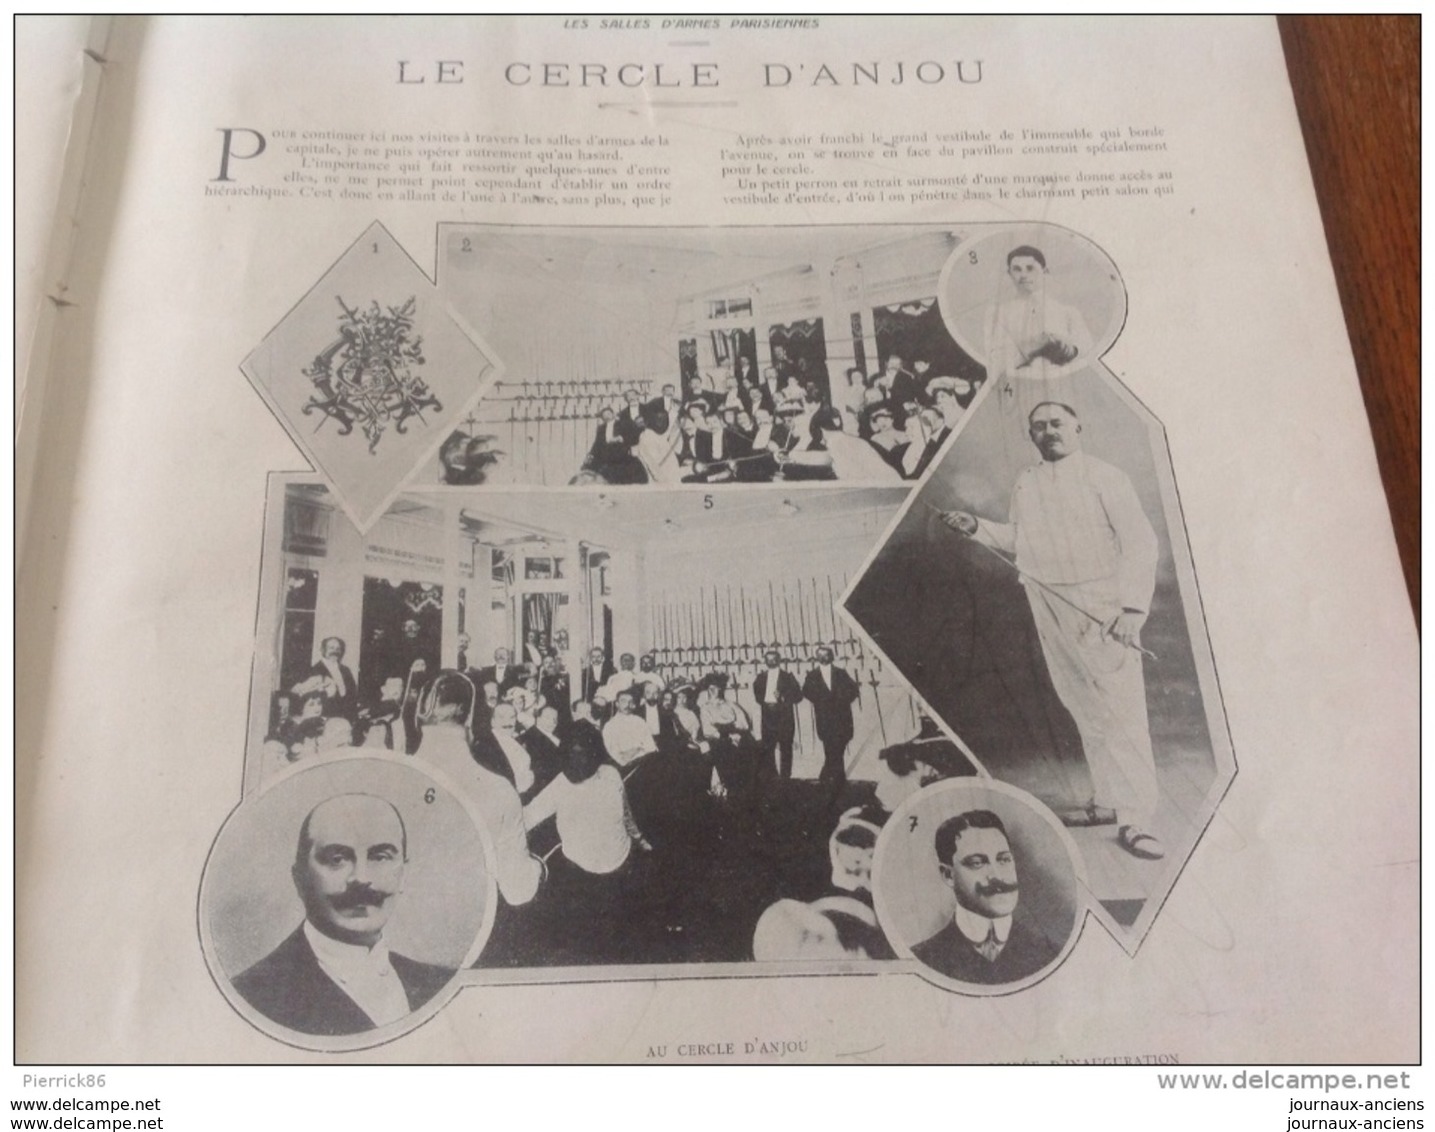 1910 SALLES D'ARMES DE PARIS CERCLE D'ANJOU / SPORTS D'HIVER (PATINAGE MOREZ DU JURA CHAMONIX ETC) / PRIX LEMONNIER - Revues Anciennes - Avant 1900